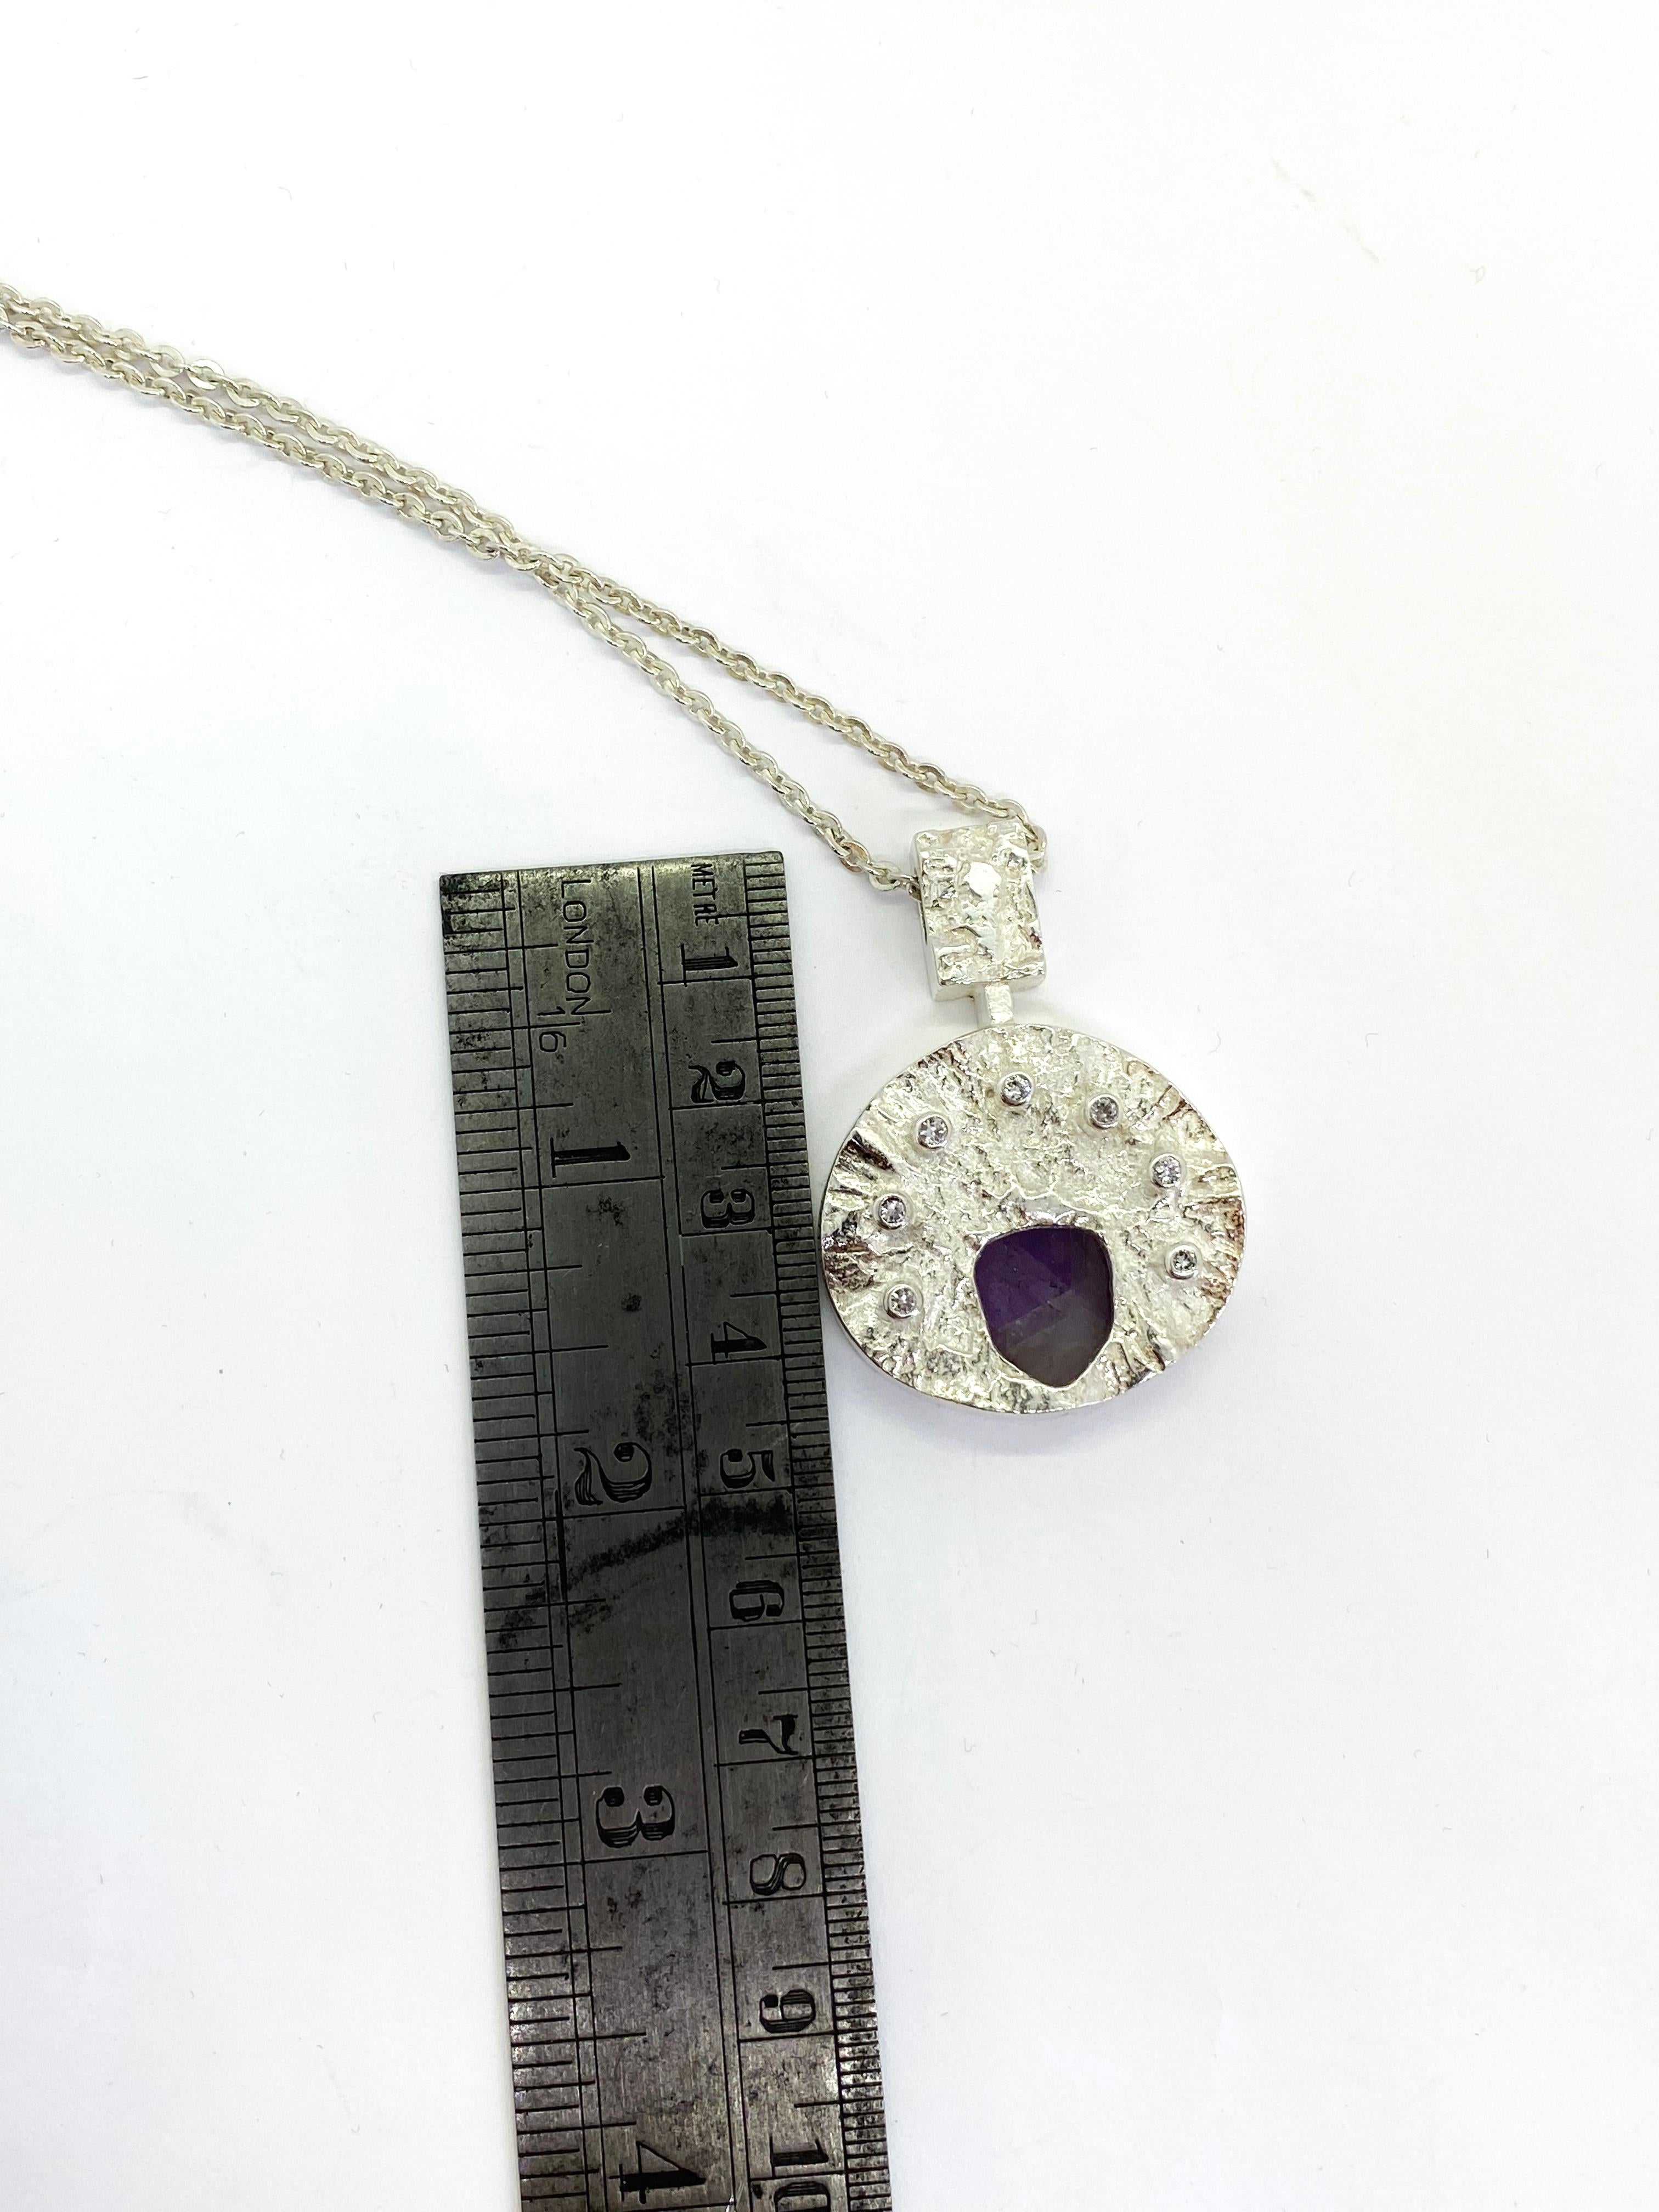 830H Silber Halskette Finnland  Amethyst.
Sehr schön.
Unbenutzte, alte Ware von einem Juwelier.